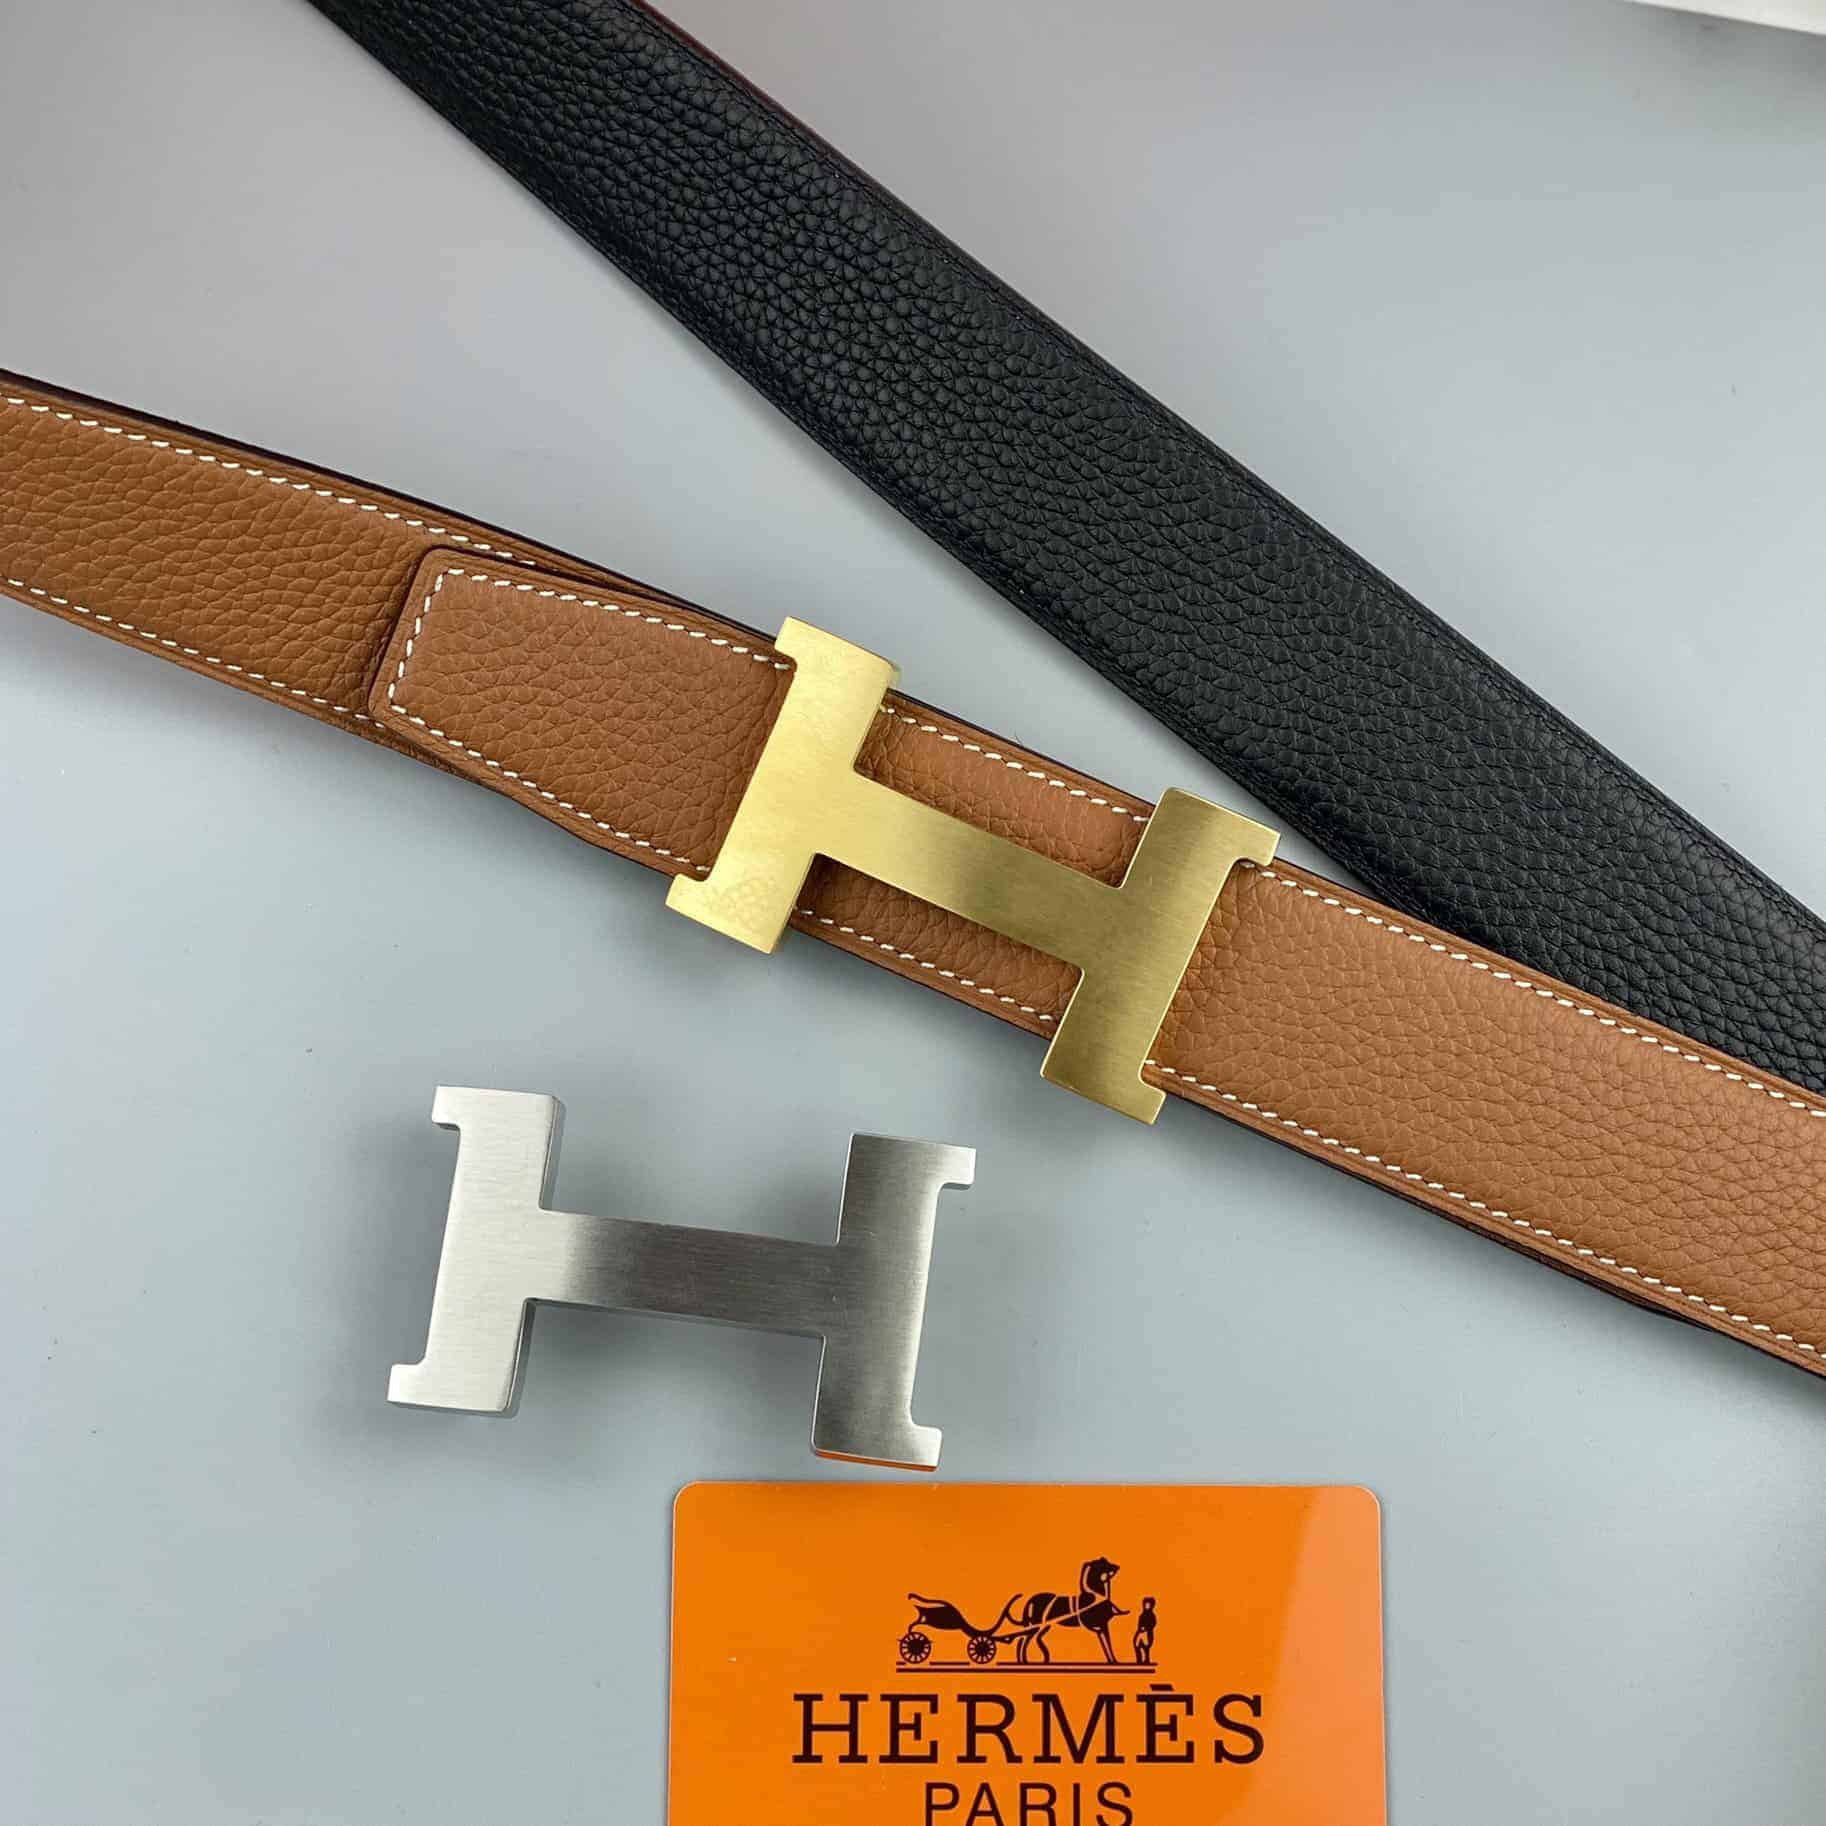 Cửa hàng bán dây lưng SF và thắt lưng Hermes tại Bắc Giang uy tín